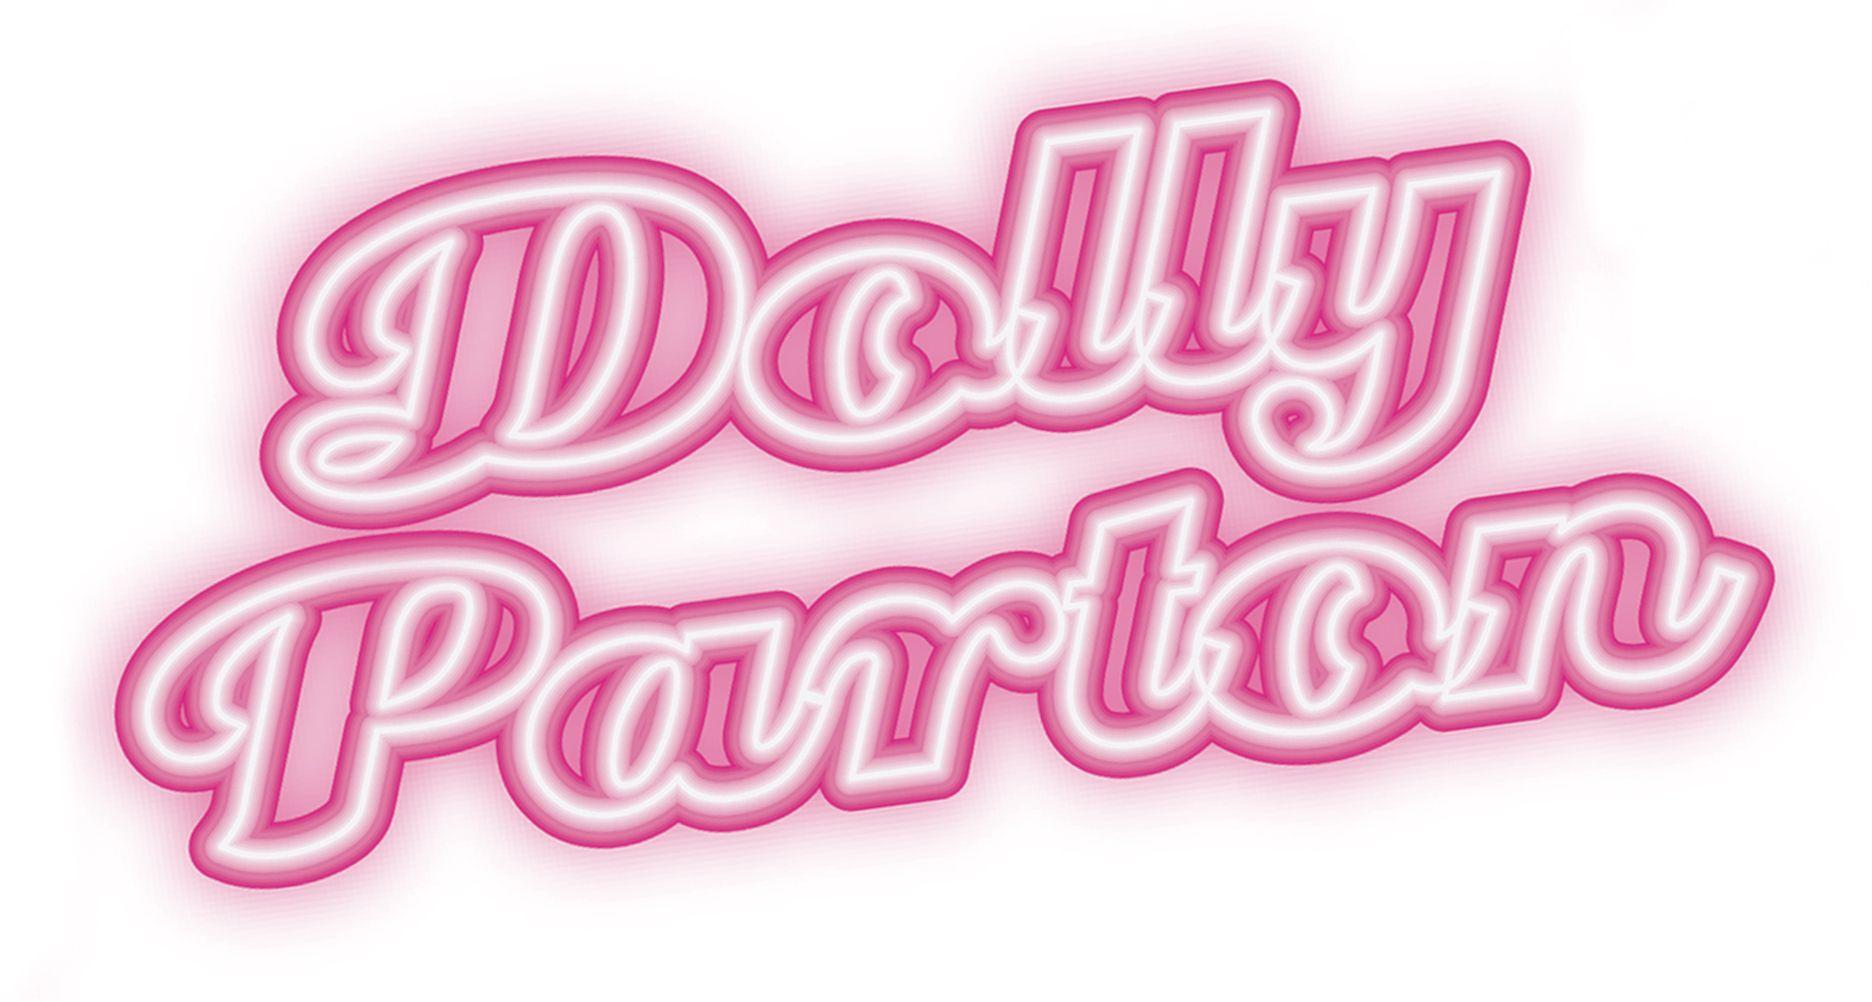 Dolly Parton Logo - News | The O2